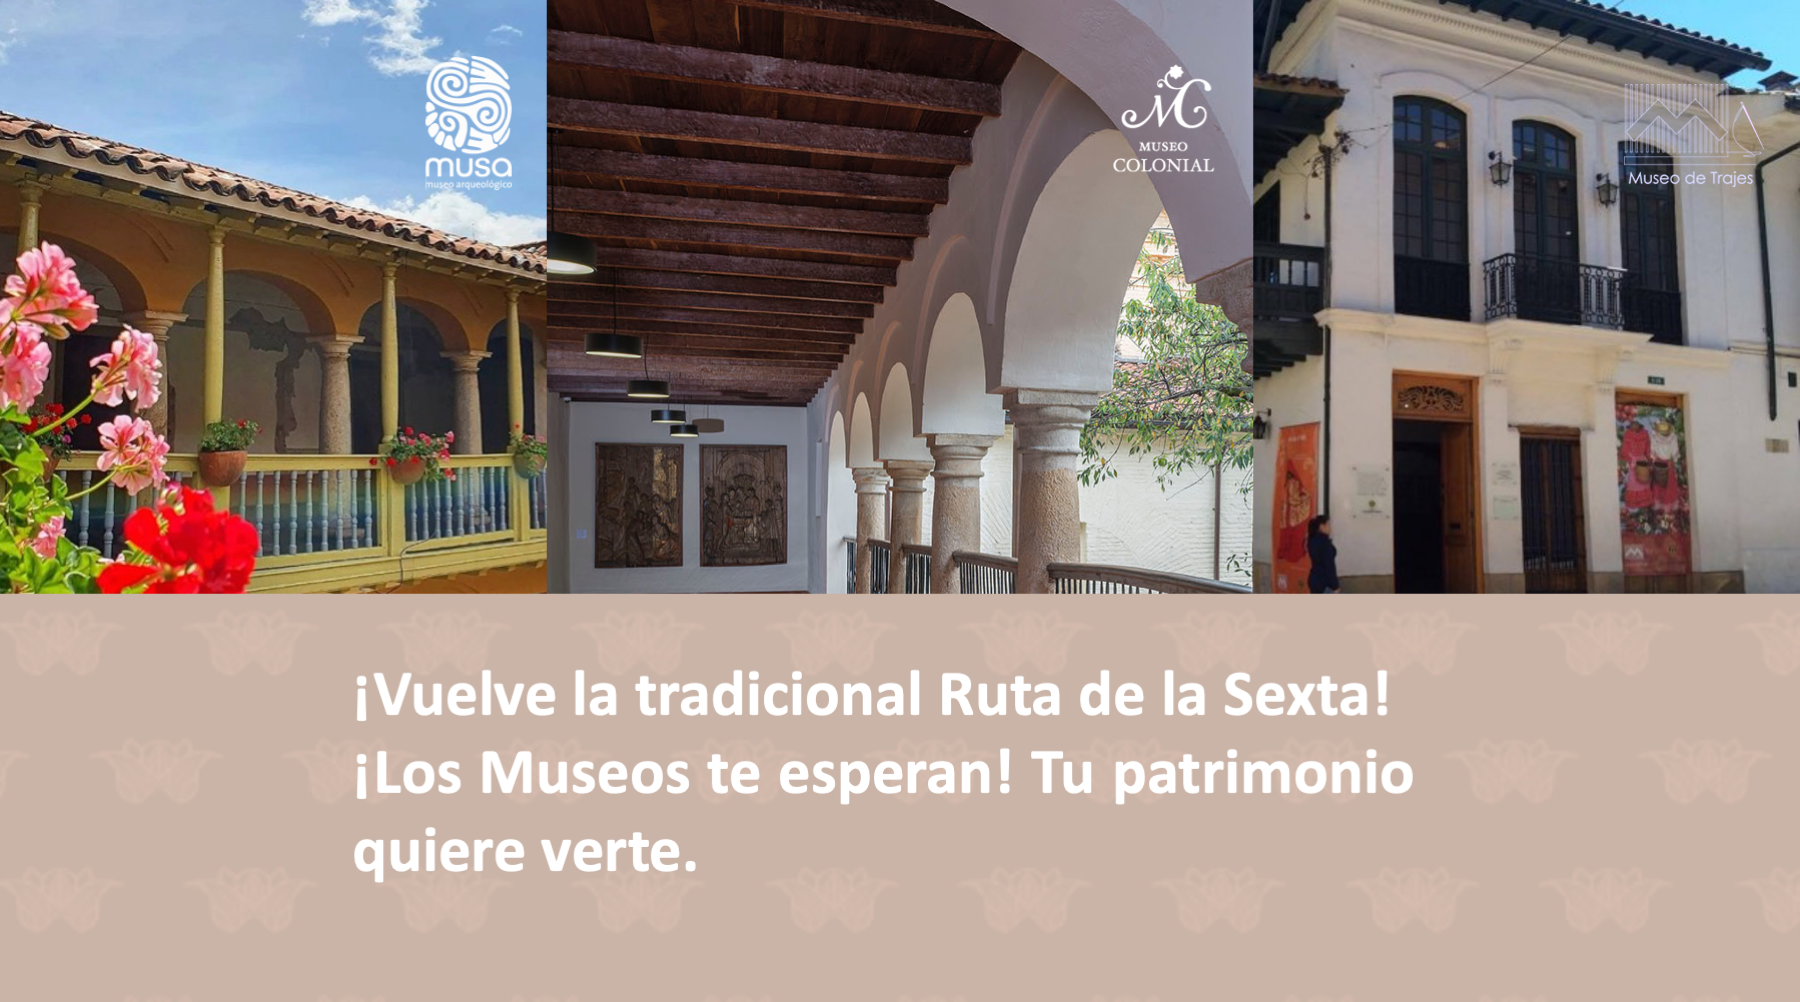 Ruta de la Sexta por el Museo Arqueológico Casa del Marqués de San Jorge-MUSA, el Museo Colonial y el Museo de trajes